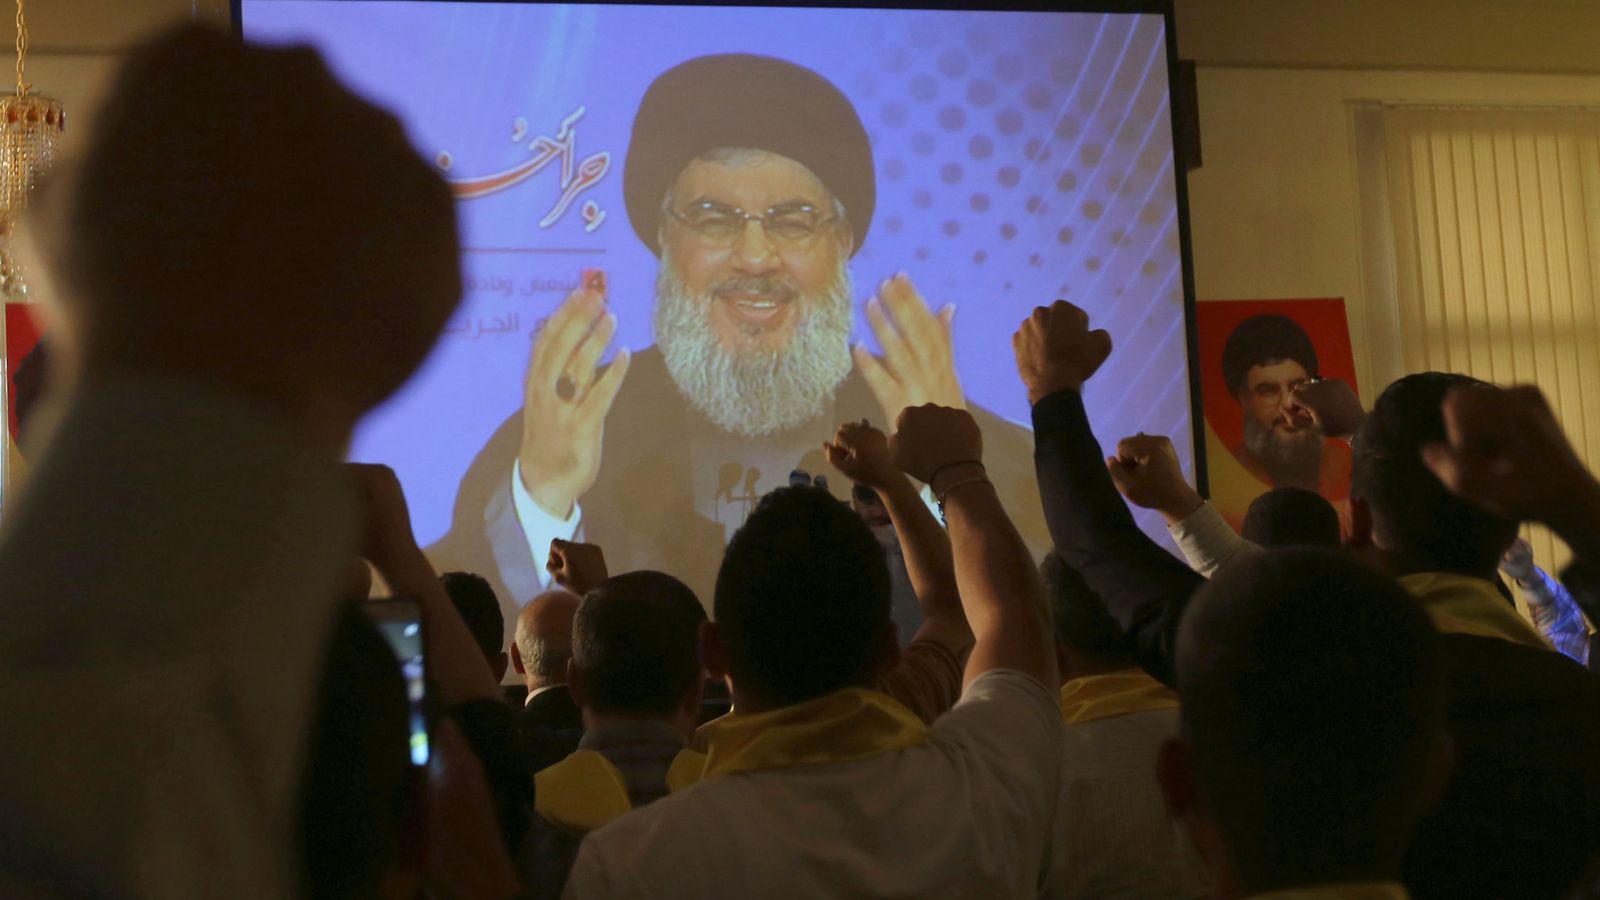 Foto: El líder de Hezbollah, Sayed Hasan Nasrallah, se dirige a sus seguidores a través de una pantalla en el Día de los Veteranos del Líbano, el 12 de mayo de 2016 (Reuters)